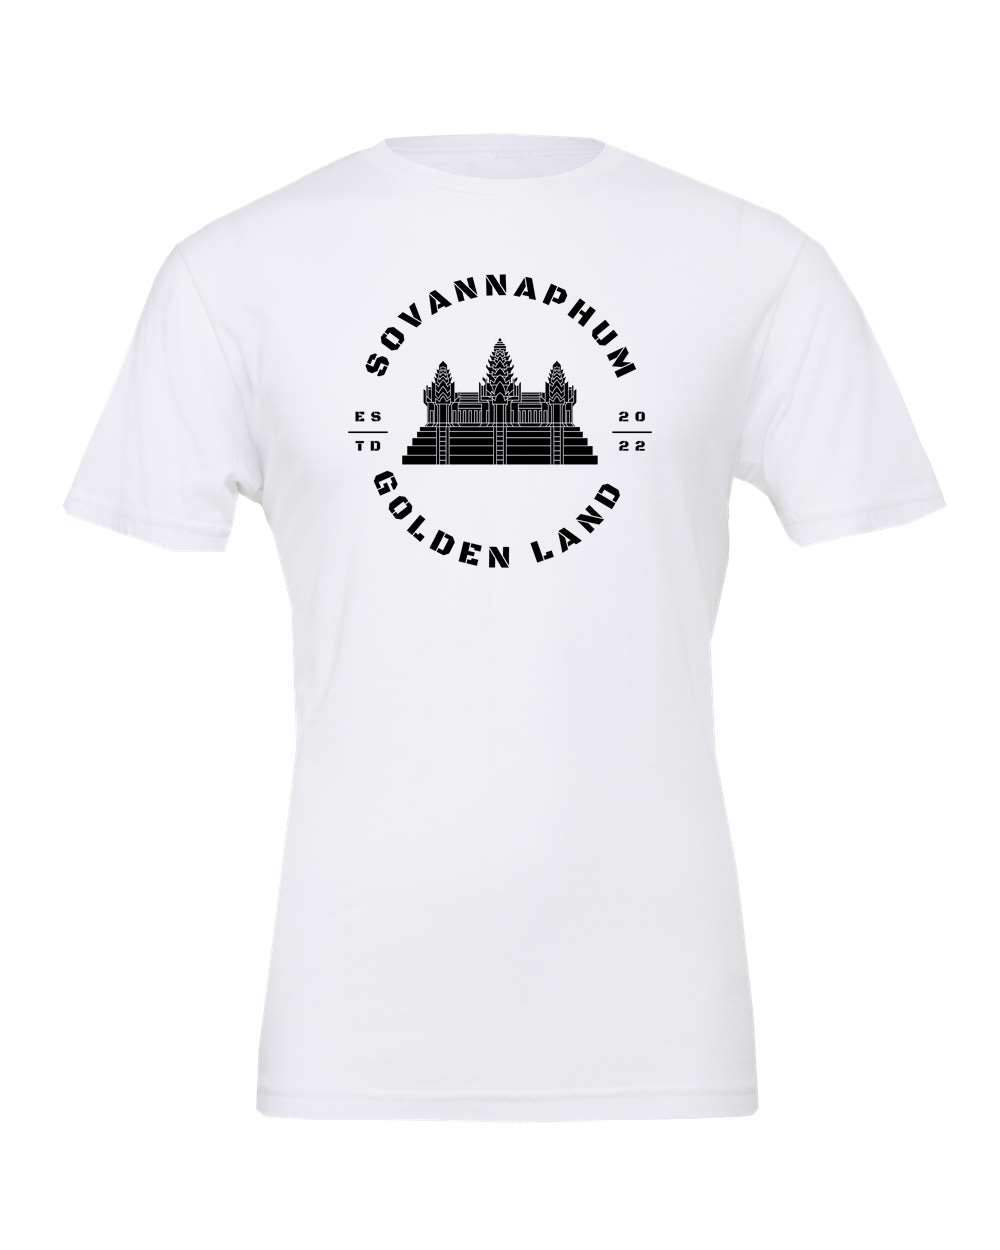 Adult T-shirt Angkor Wat